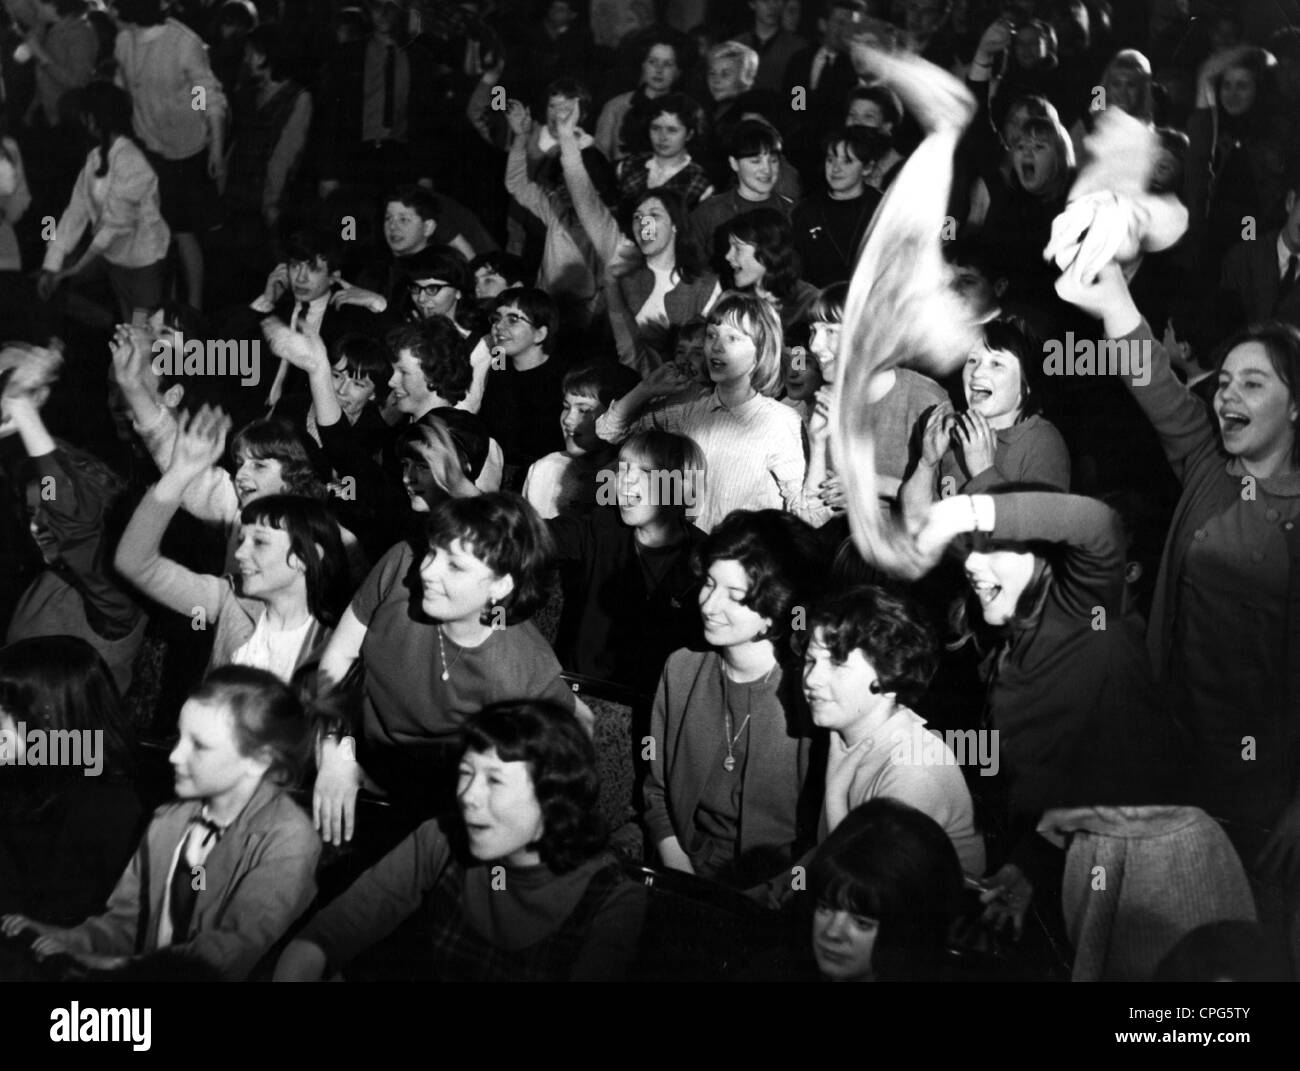 People, Youth, Beatles fans dans un concert, 1964, droits additionnels-Clearences-non disponible Banque D'Images